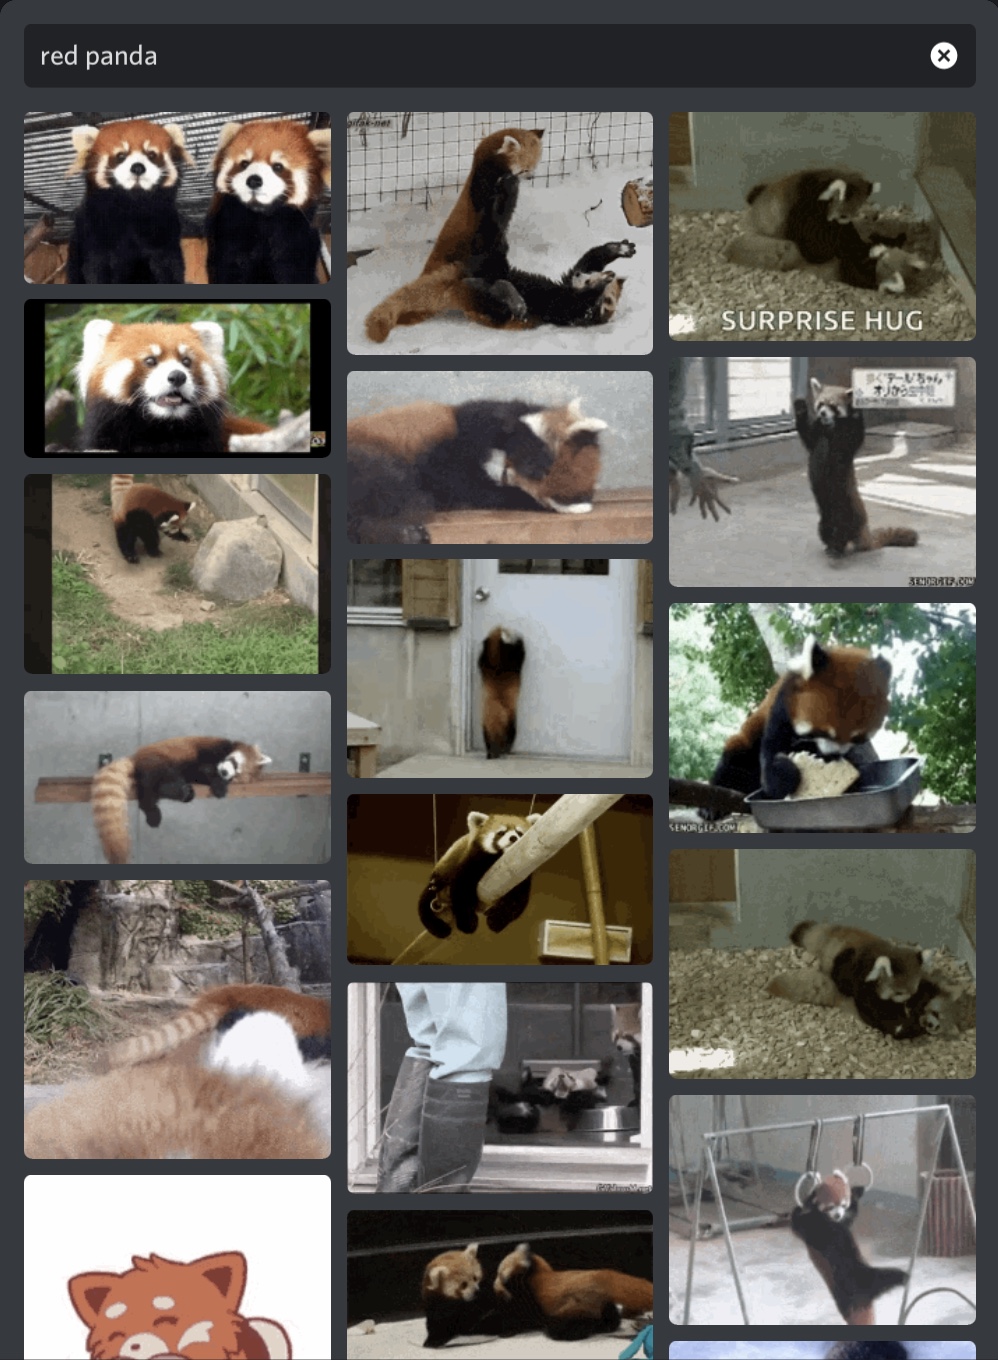 Image d'un résultat d'une recherche de GIF de pandas roux sur le sélecteur de GIF iOS